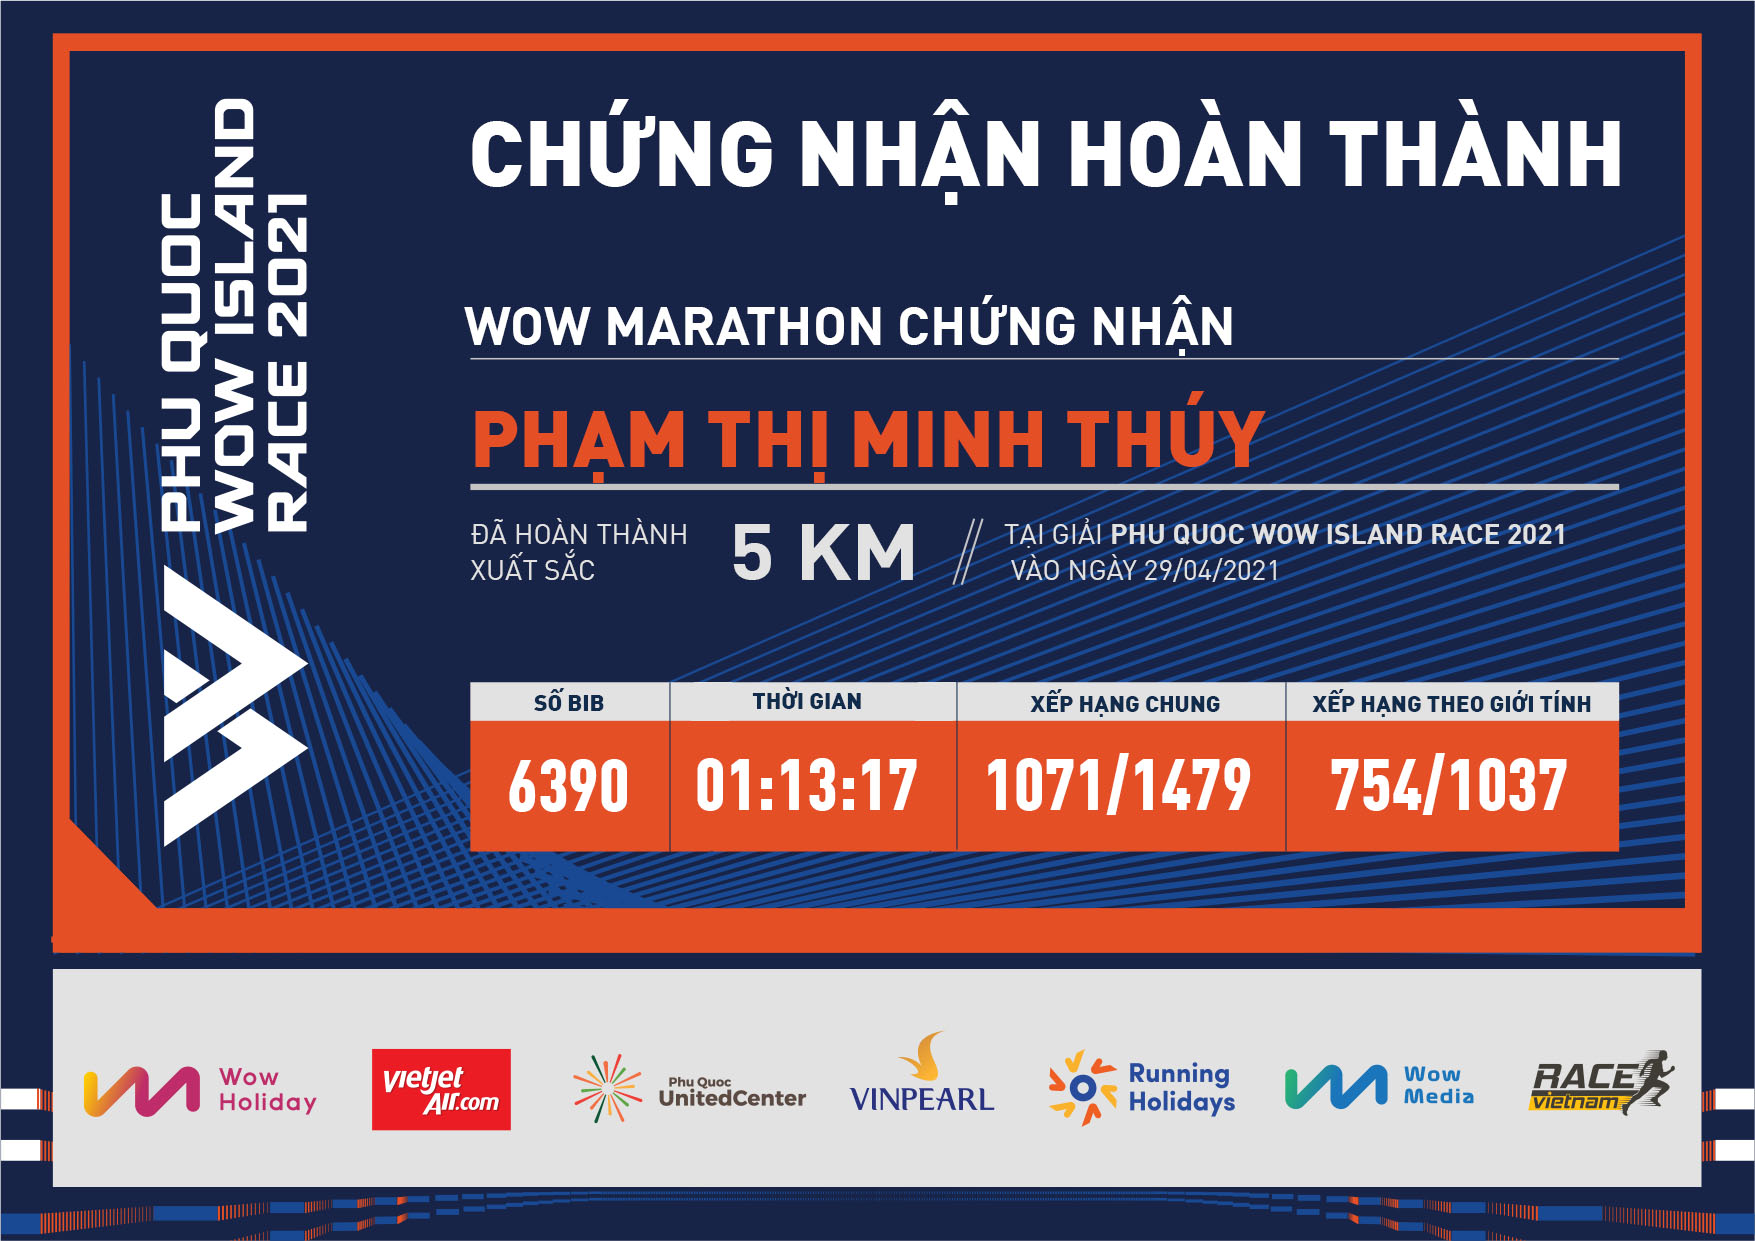 6390 - Phạm Thị Minh Thúy